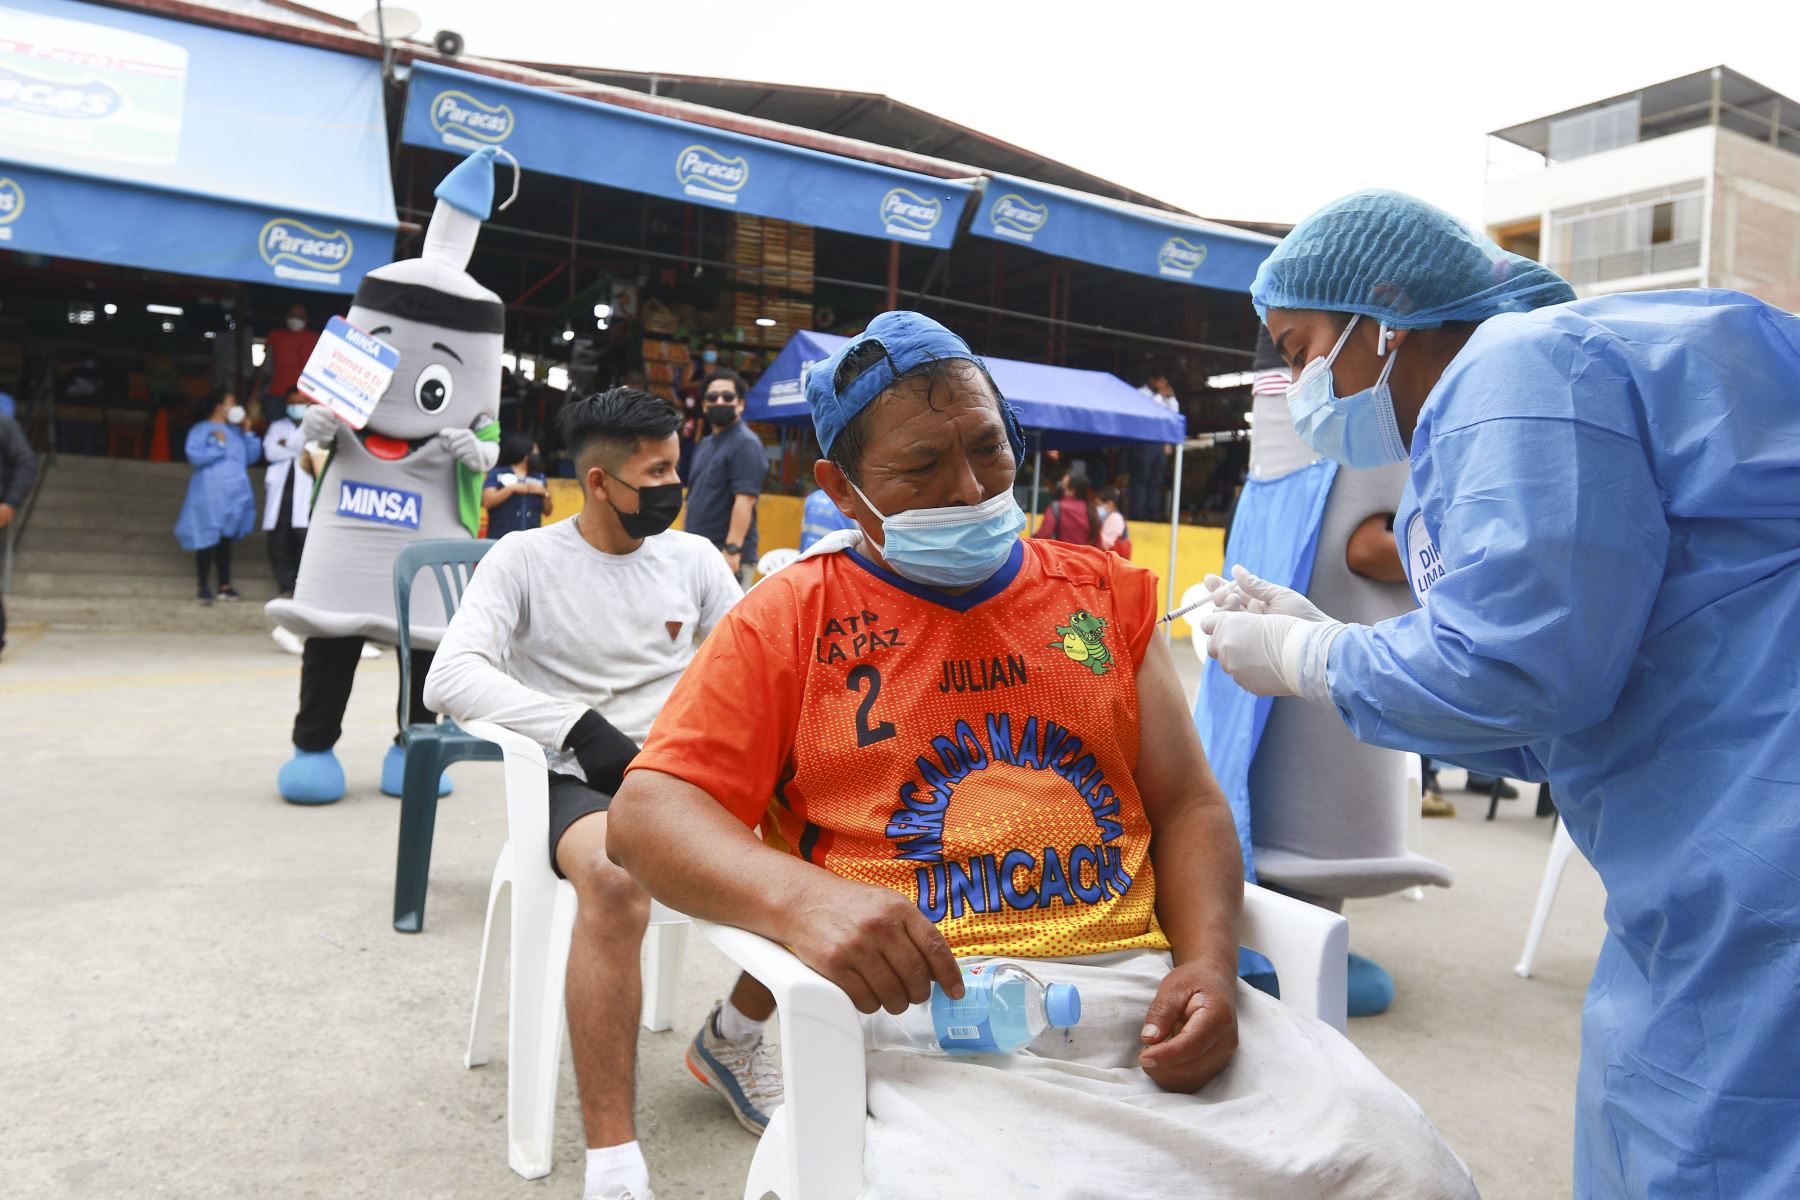 Brigadas de vacunación llegaron al Mercado Mayorista Unicachi en el distrito de Villa El Salvador para poder vacunar contra la Covid 19 a todos los comerciantes y transeúntes. Además se hizo descarte de Covid 19 y se entregó kits de mascarillas. Foto: ANDINA/Jhonel Rodríguez